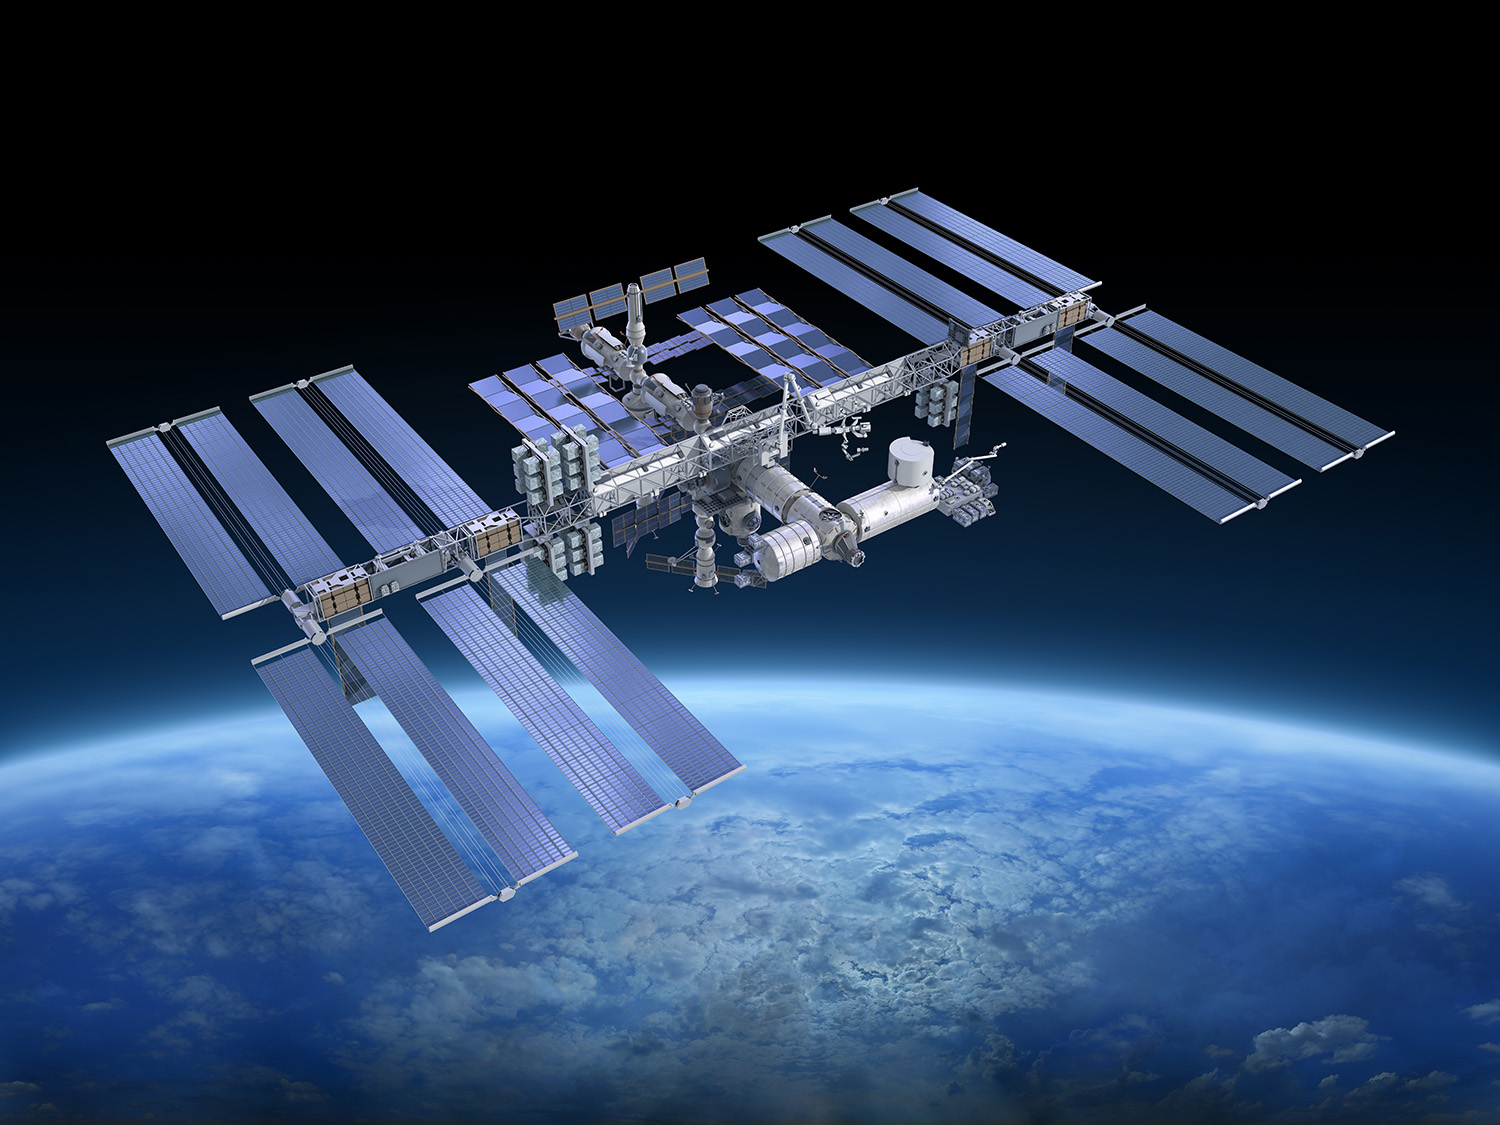 uluslararasi uzay istasyonu 20 yilini kutluyor tubitak bilim genc